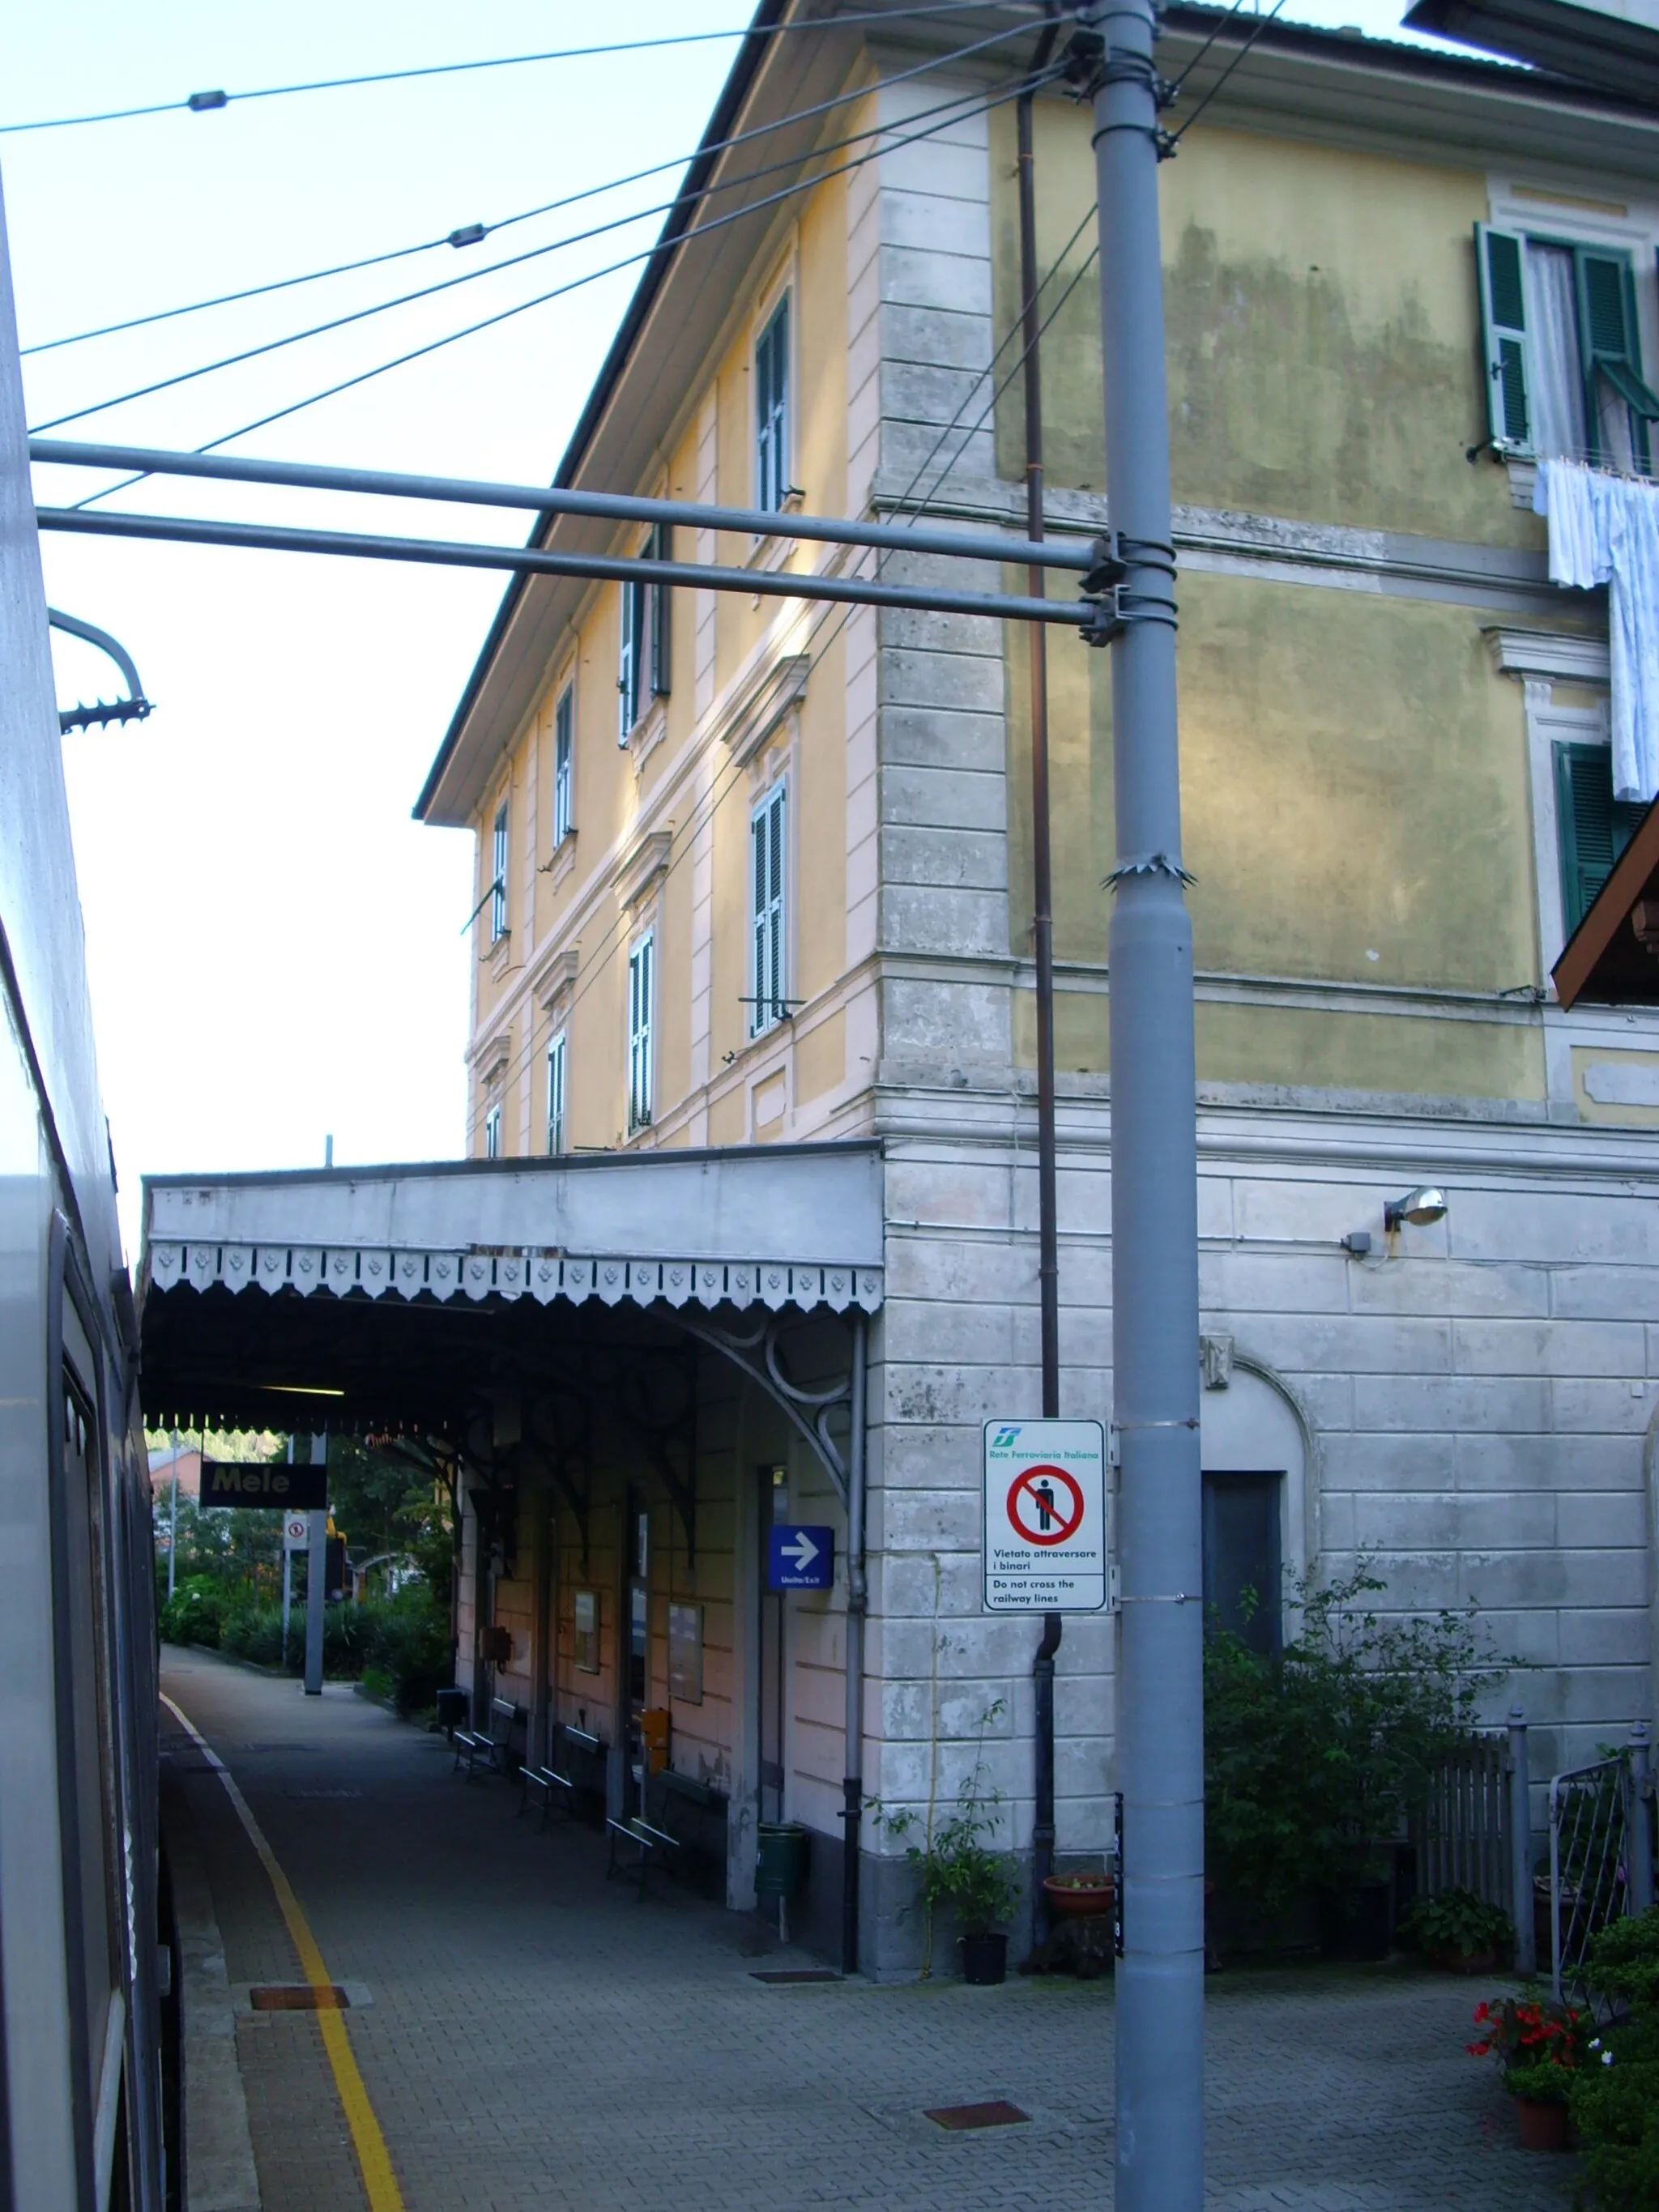 Photo showing: Mele train station